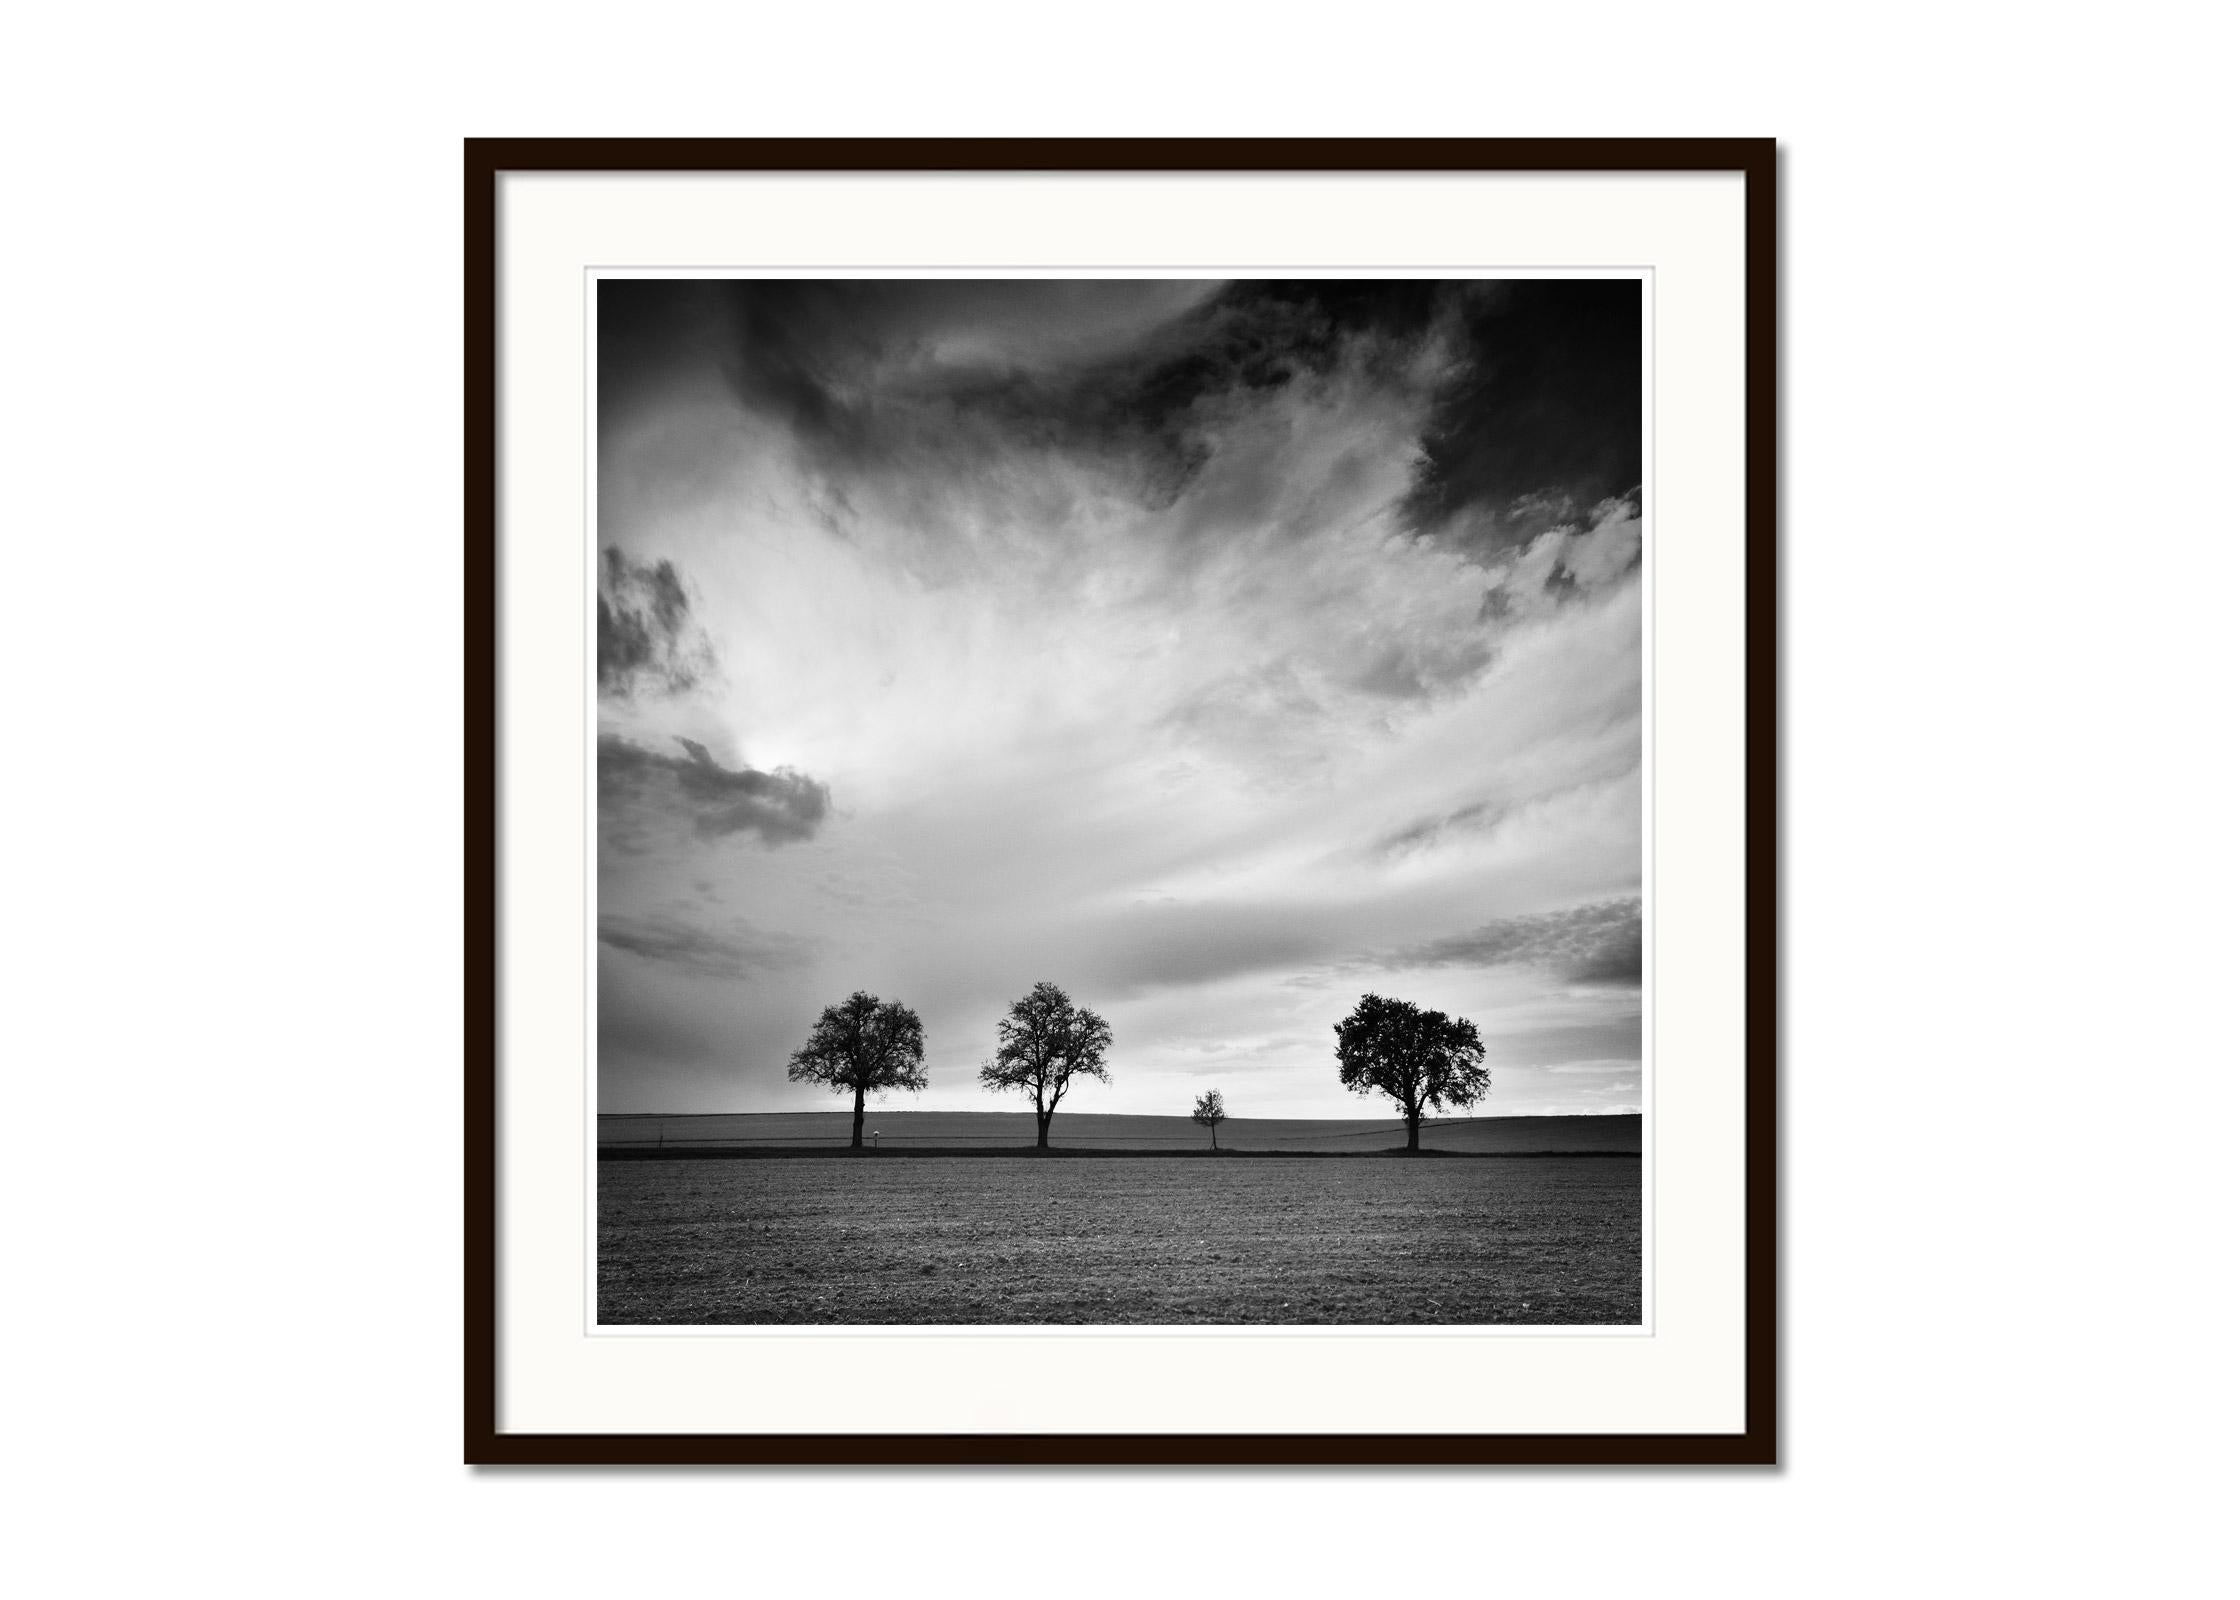 Dreieinhalb Baum, sehr wolkenverhangen, Sturm, Schwarz-Weiß-Landschaftsfotografie (Grau), Landscape Photograph, von Gerald Berghammer